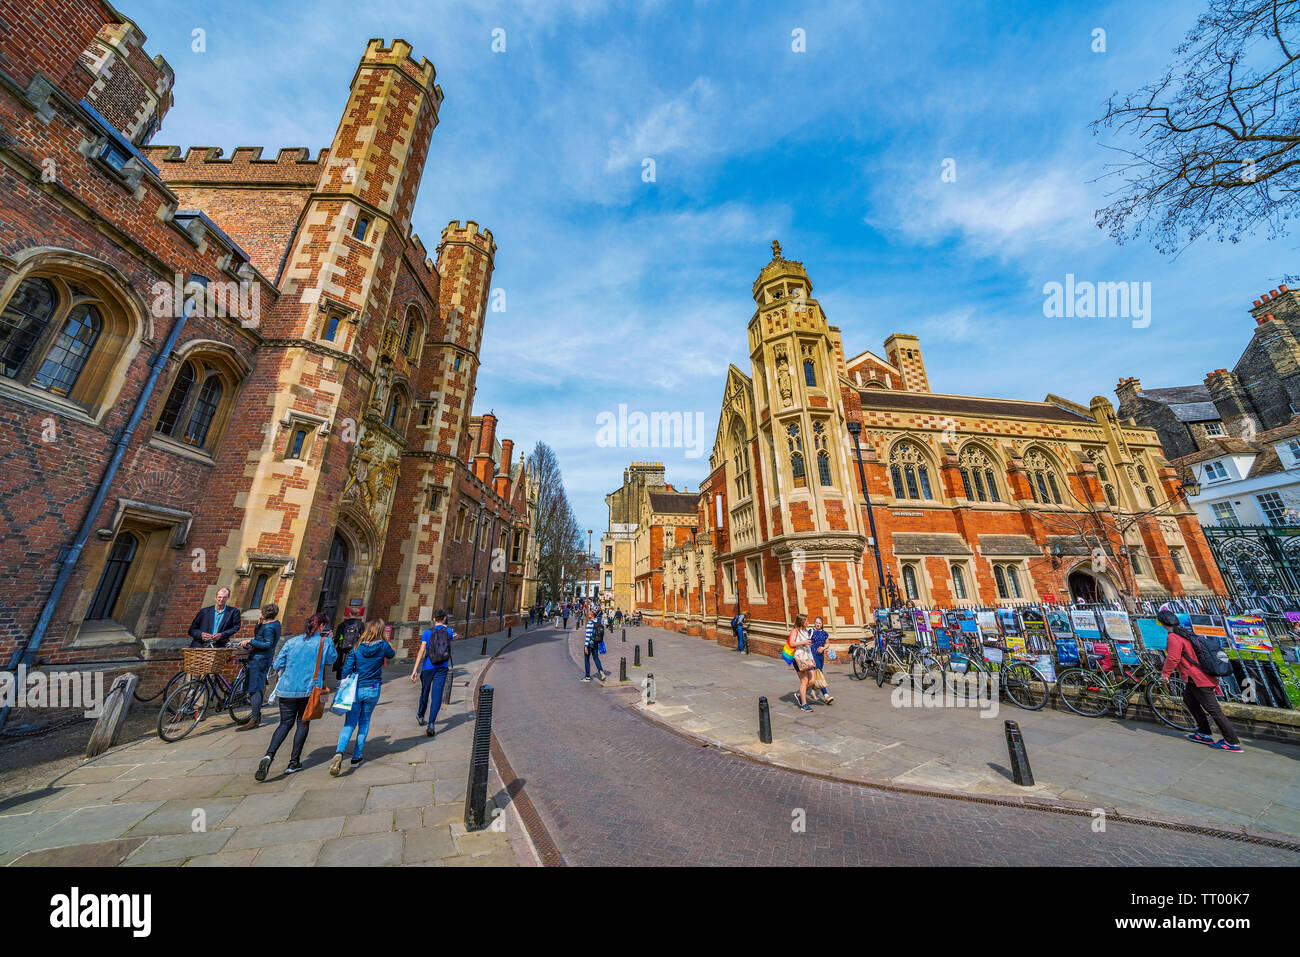 CAMBRIDGE, Royaume-Uni - 18 avril : rue de la vieille ville avec l'architecture traditionnelle britannique à Cambridge le 18 avril 2019 Banque D'Images